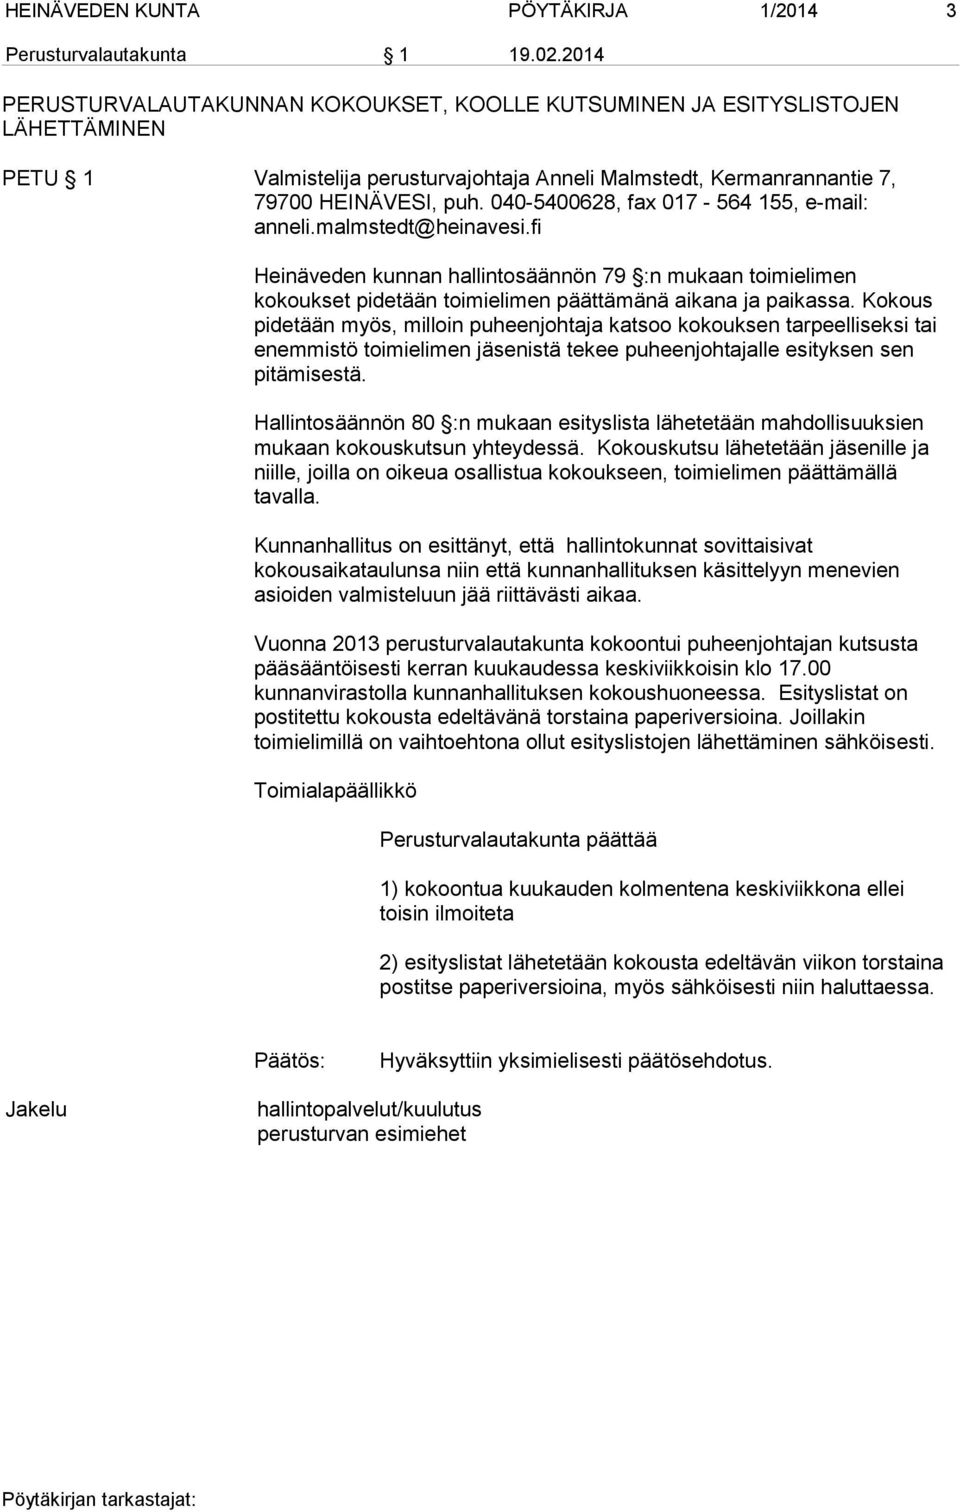 040-5400628, fax 017-564 155, e-mail: anneli.malmstedt@heinavesi.fi Heinäveden kunnan hallintosäännön 79 :n mukaan toimielimen kokoukset pidetään toimielimen päättämänä aikana ja paikassa.